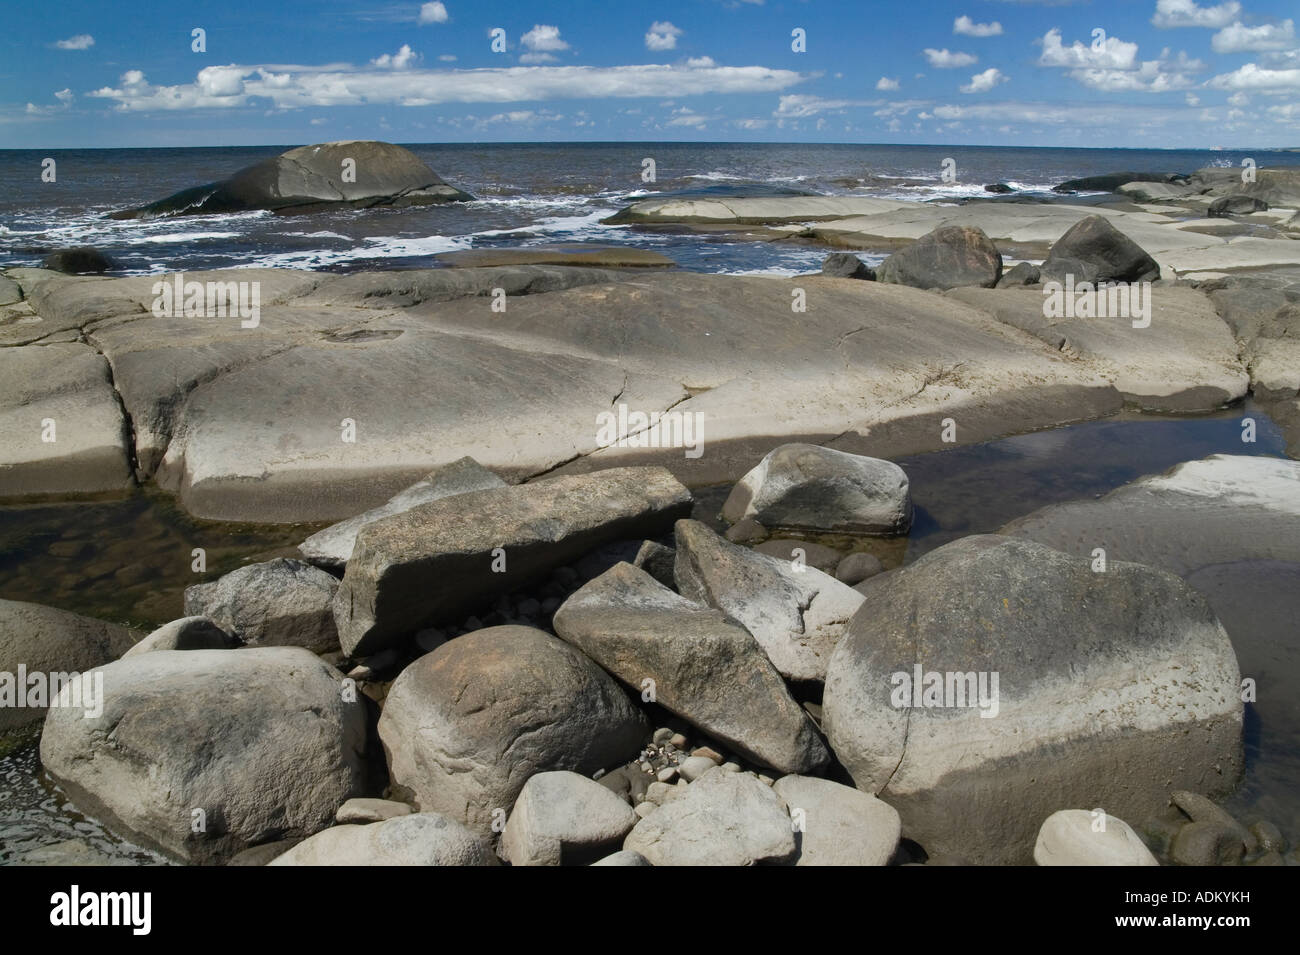 The skerries at Steninge beach Steninge near Halmstad Sweden Stock Photo